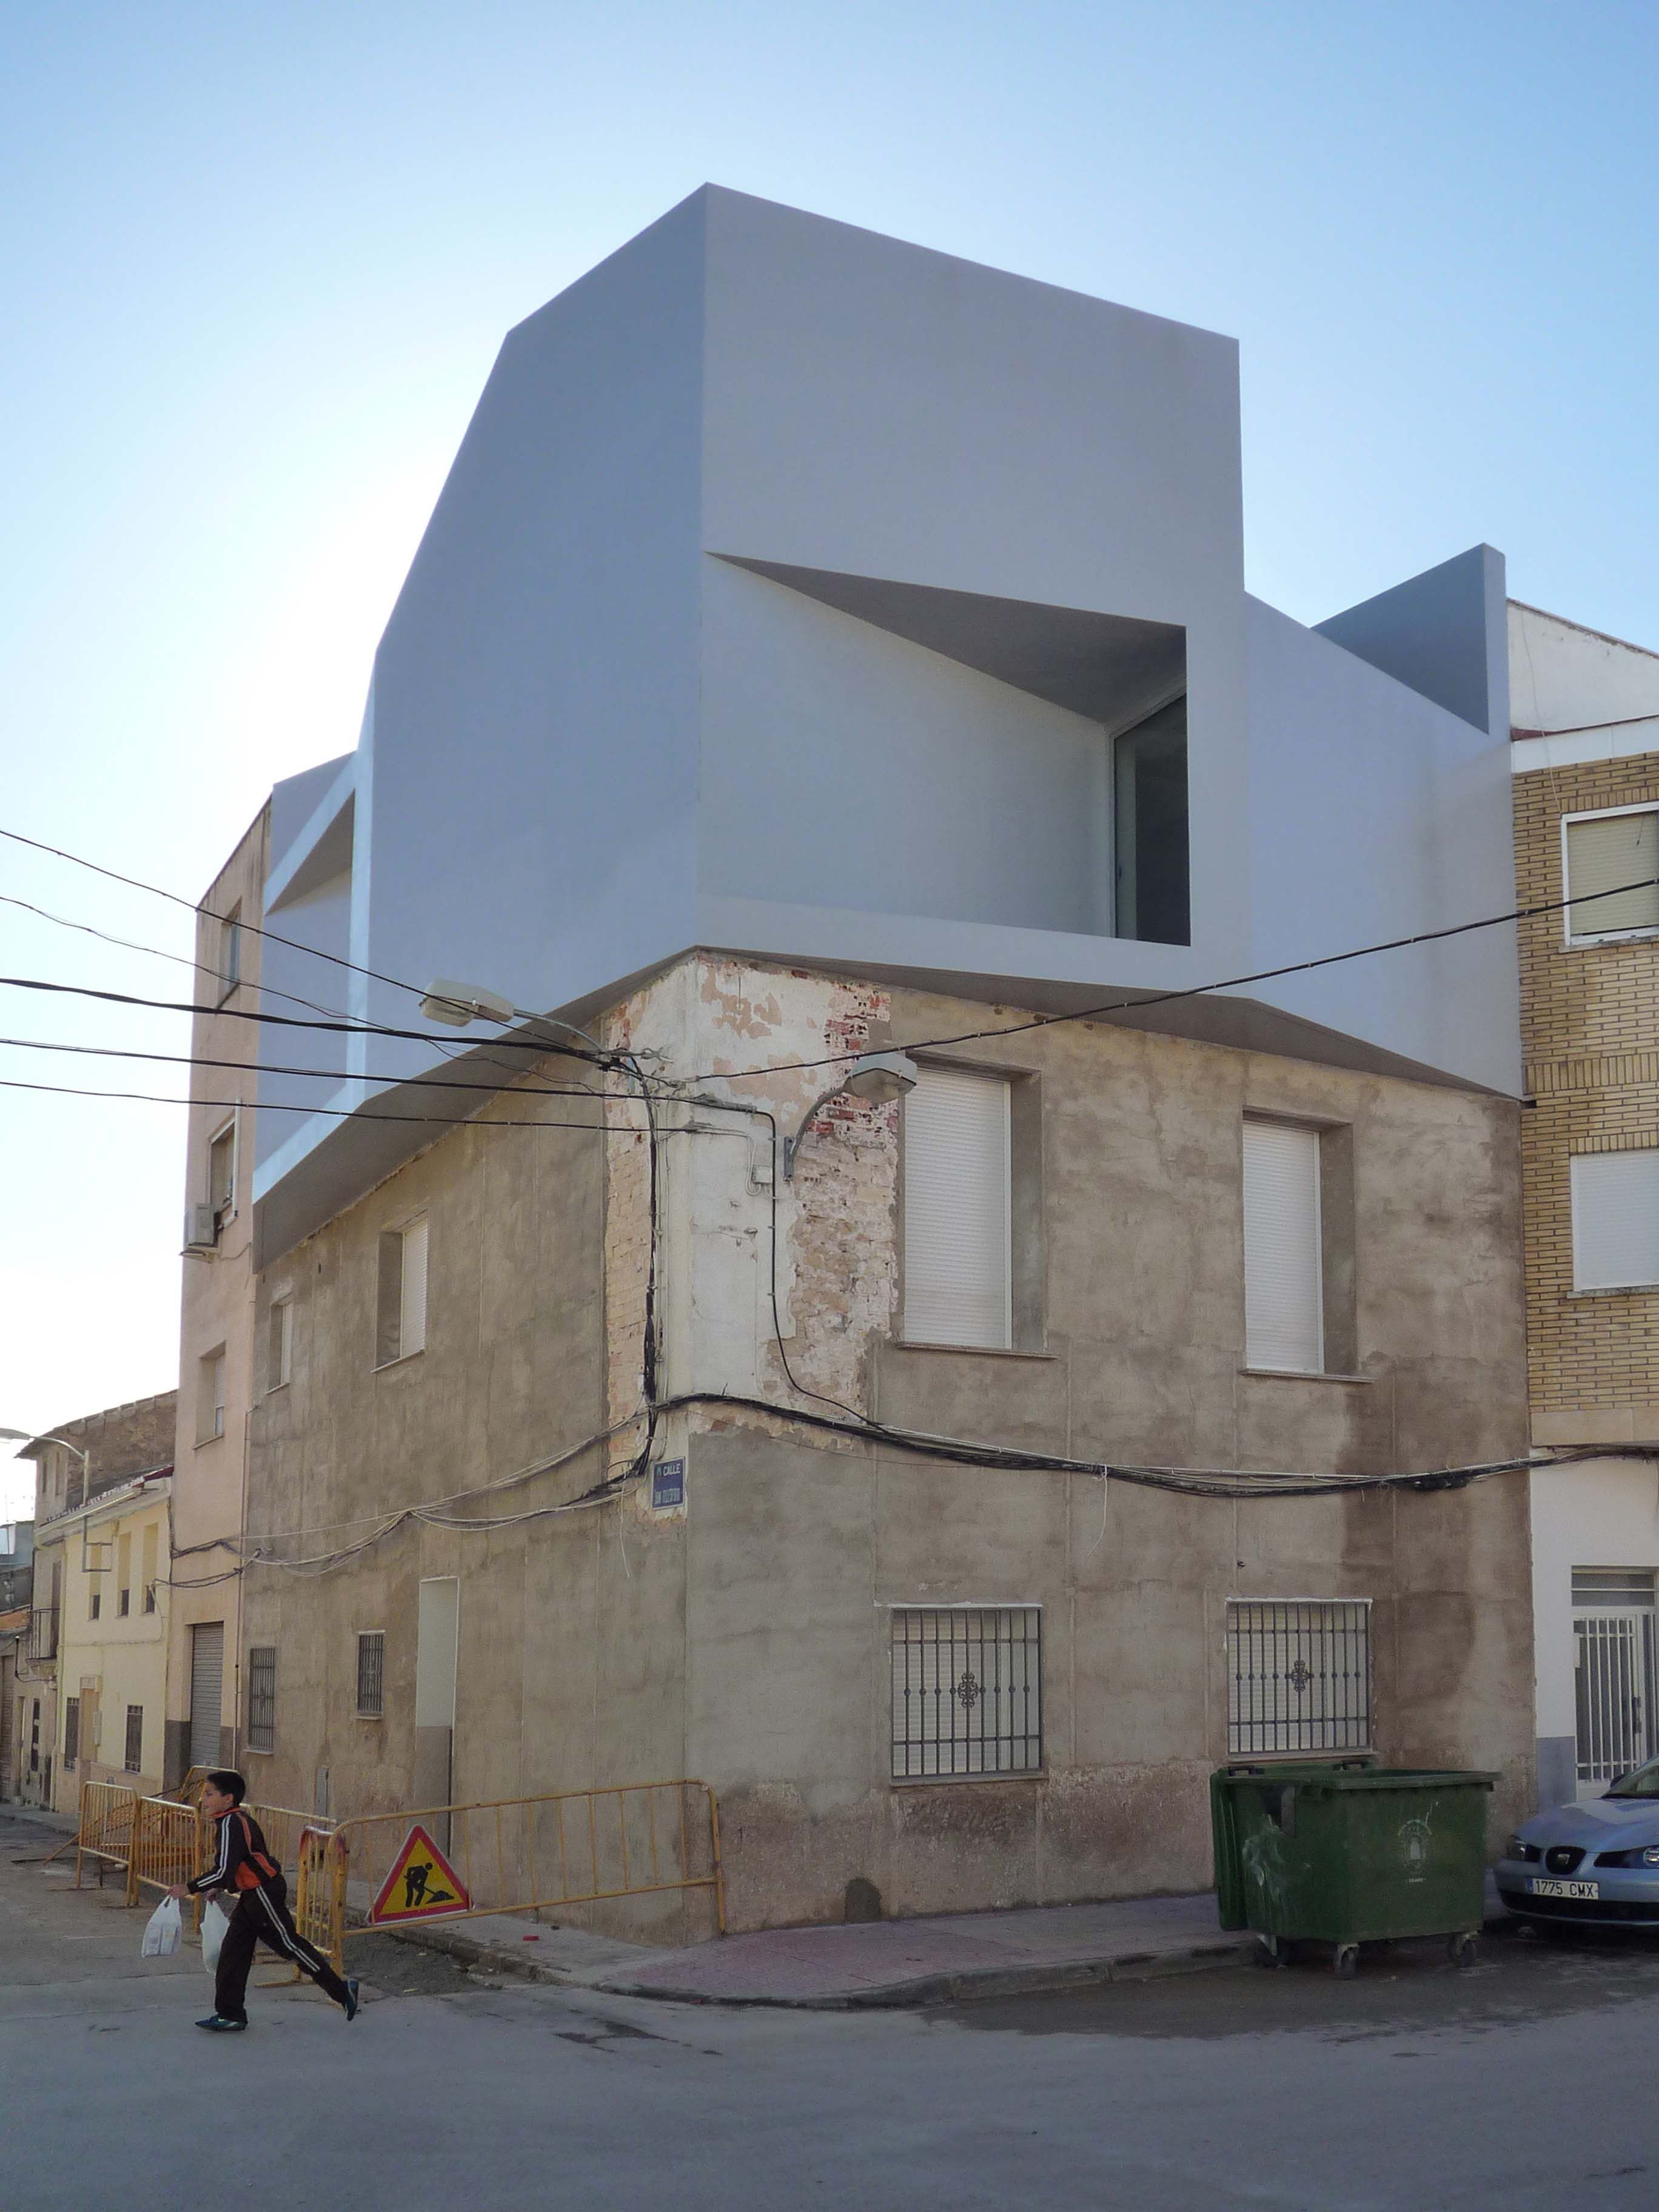 Casa Lude, Grupo Aranea | OLD-NEW | Pinterest | Architecture, Arch ...